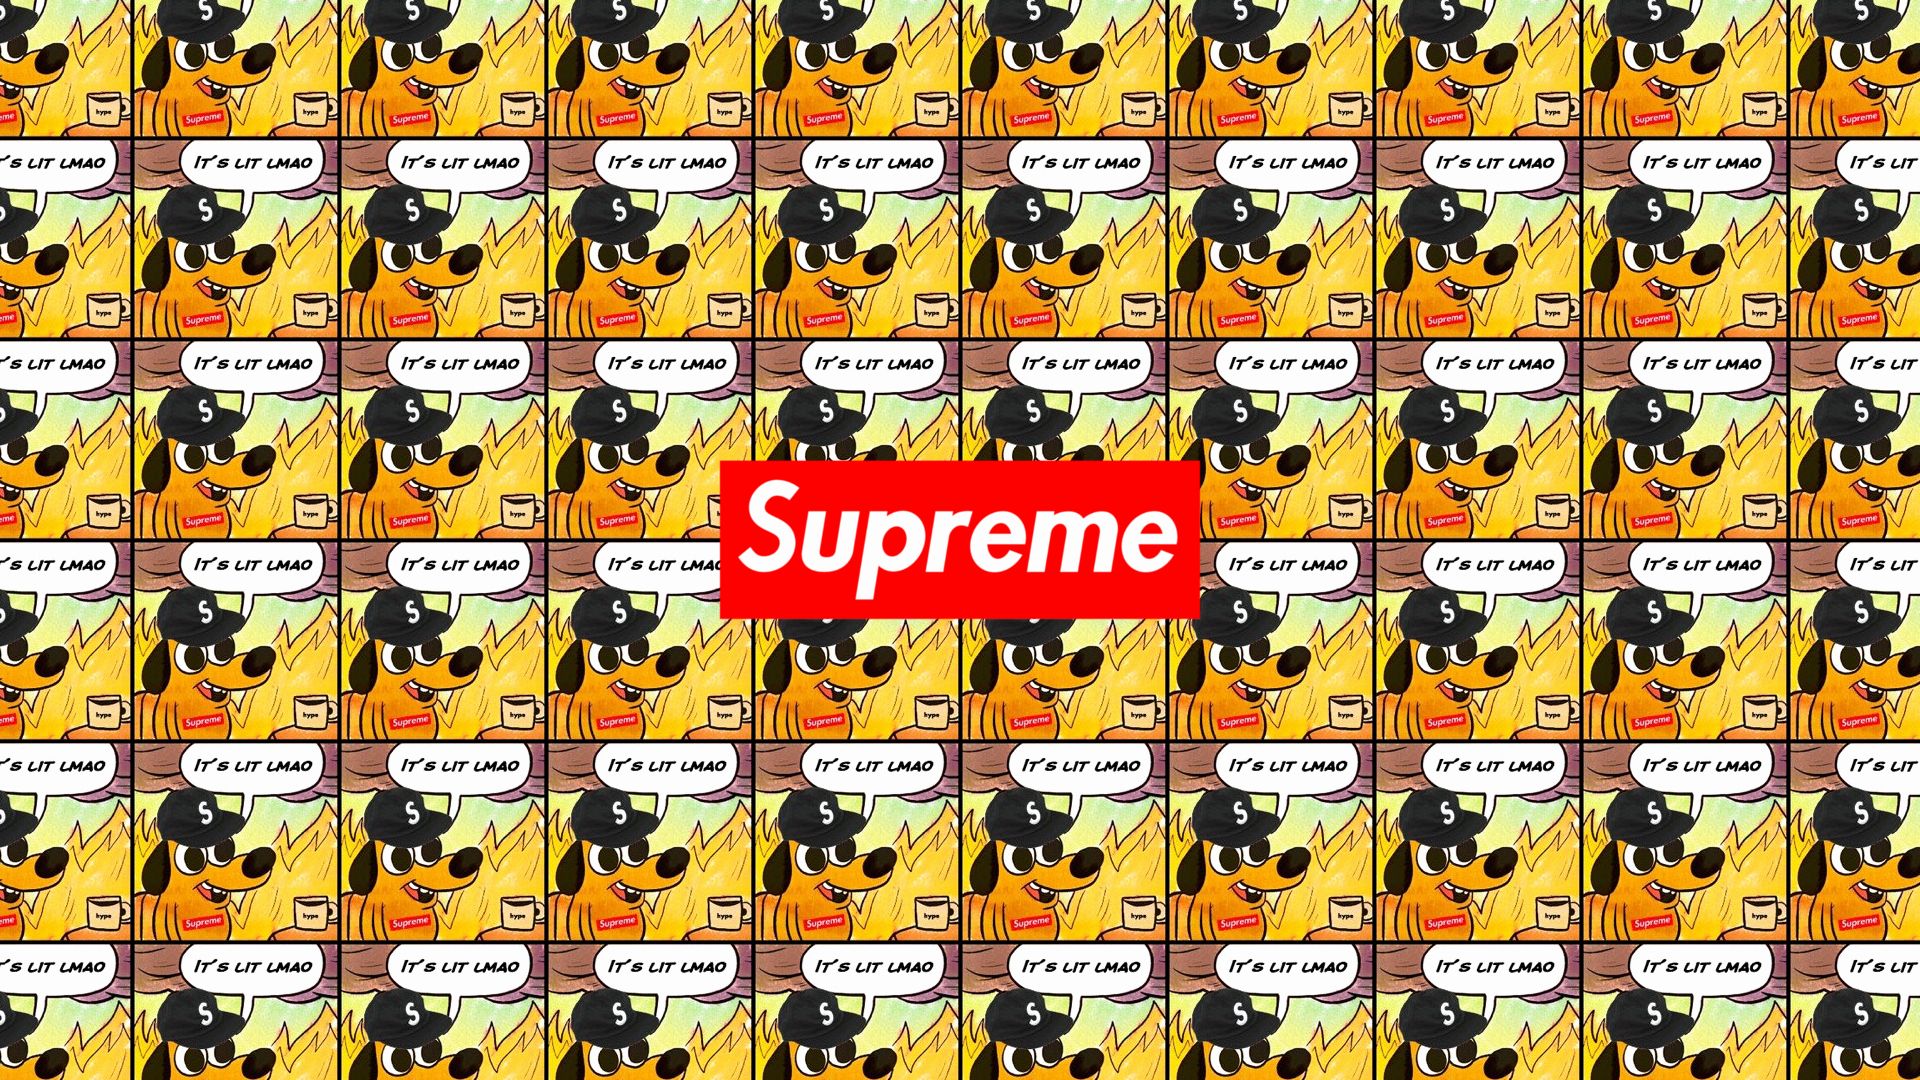 Supreme Bape Background